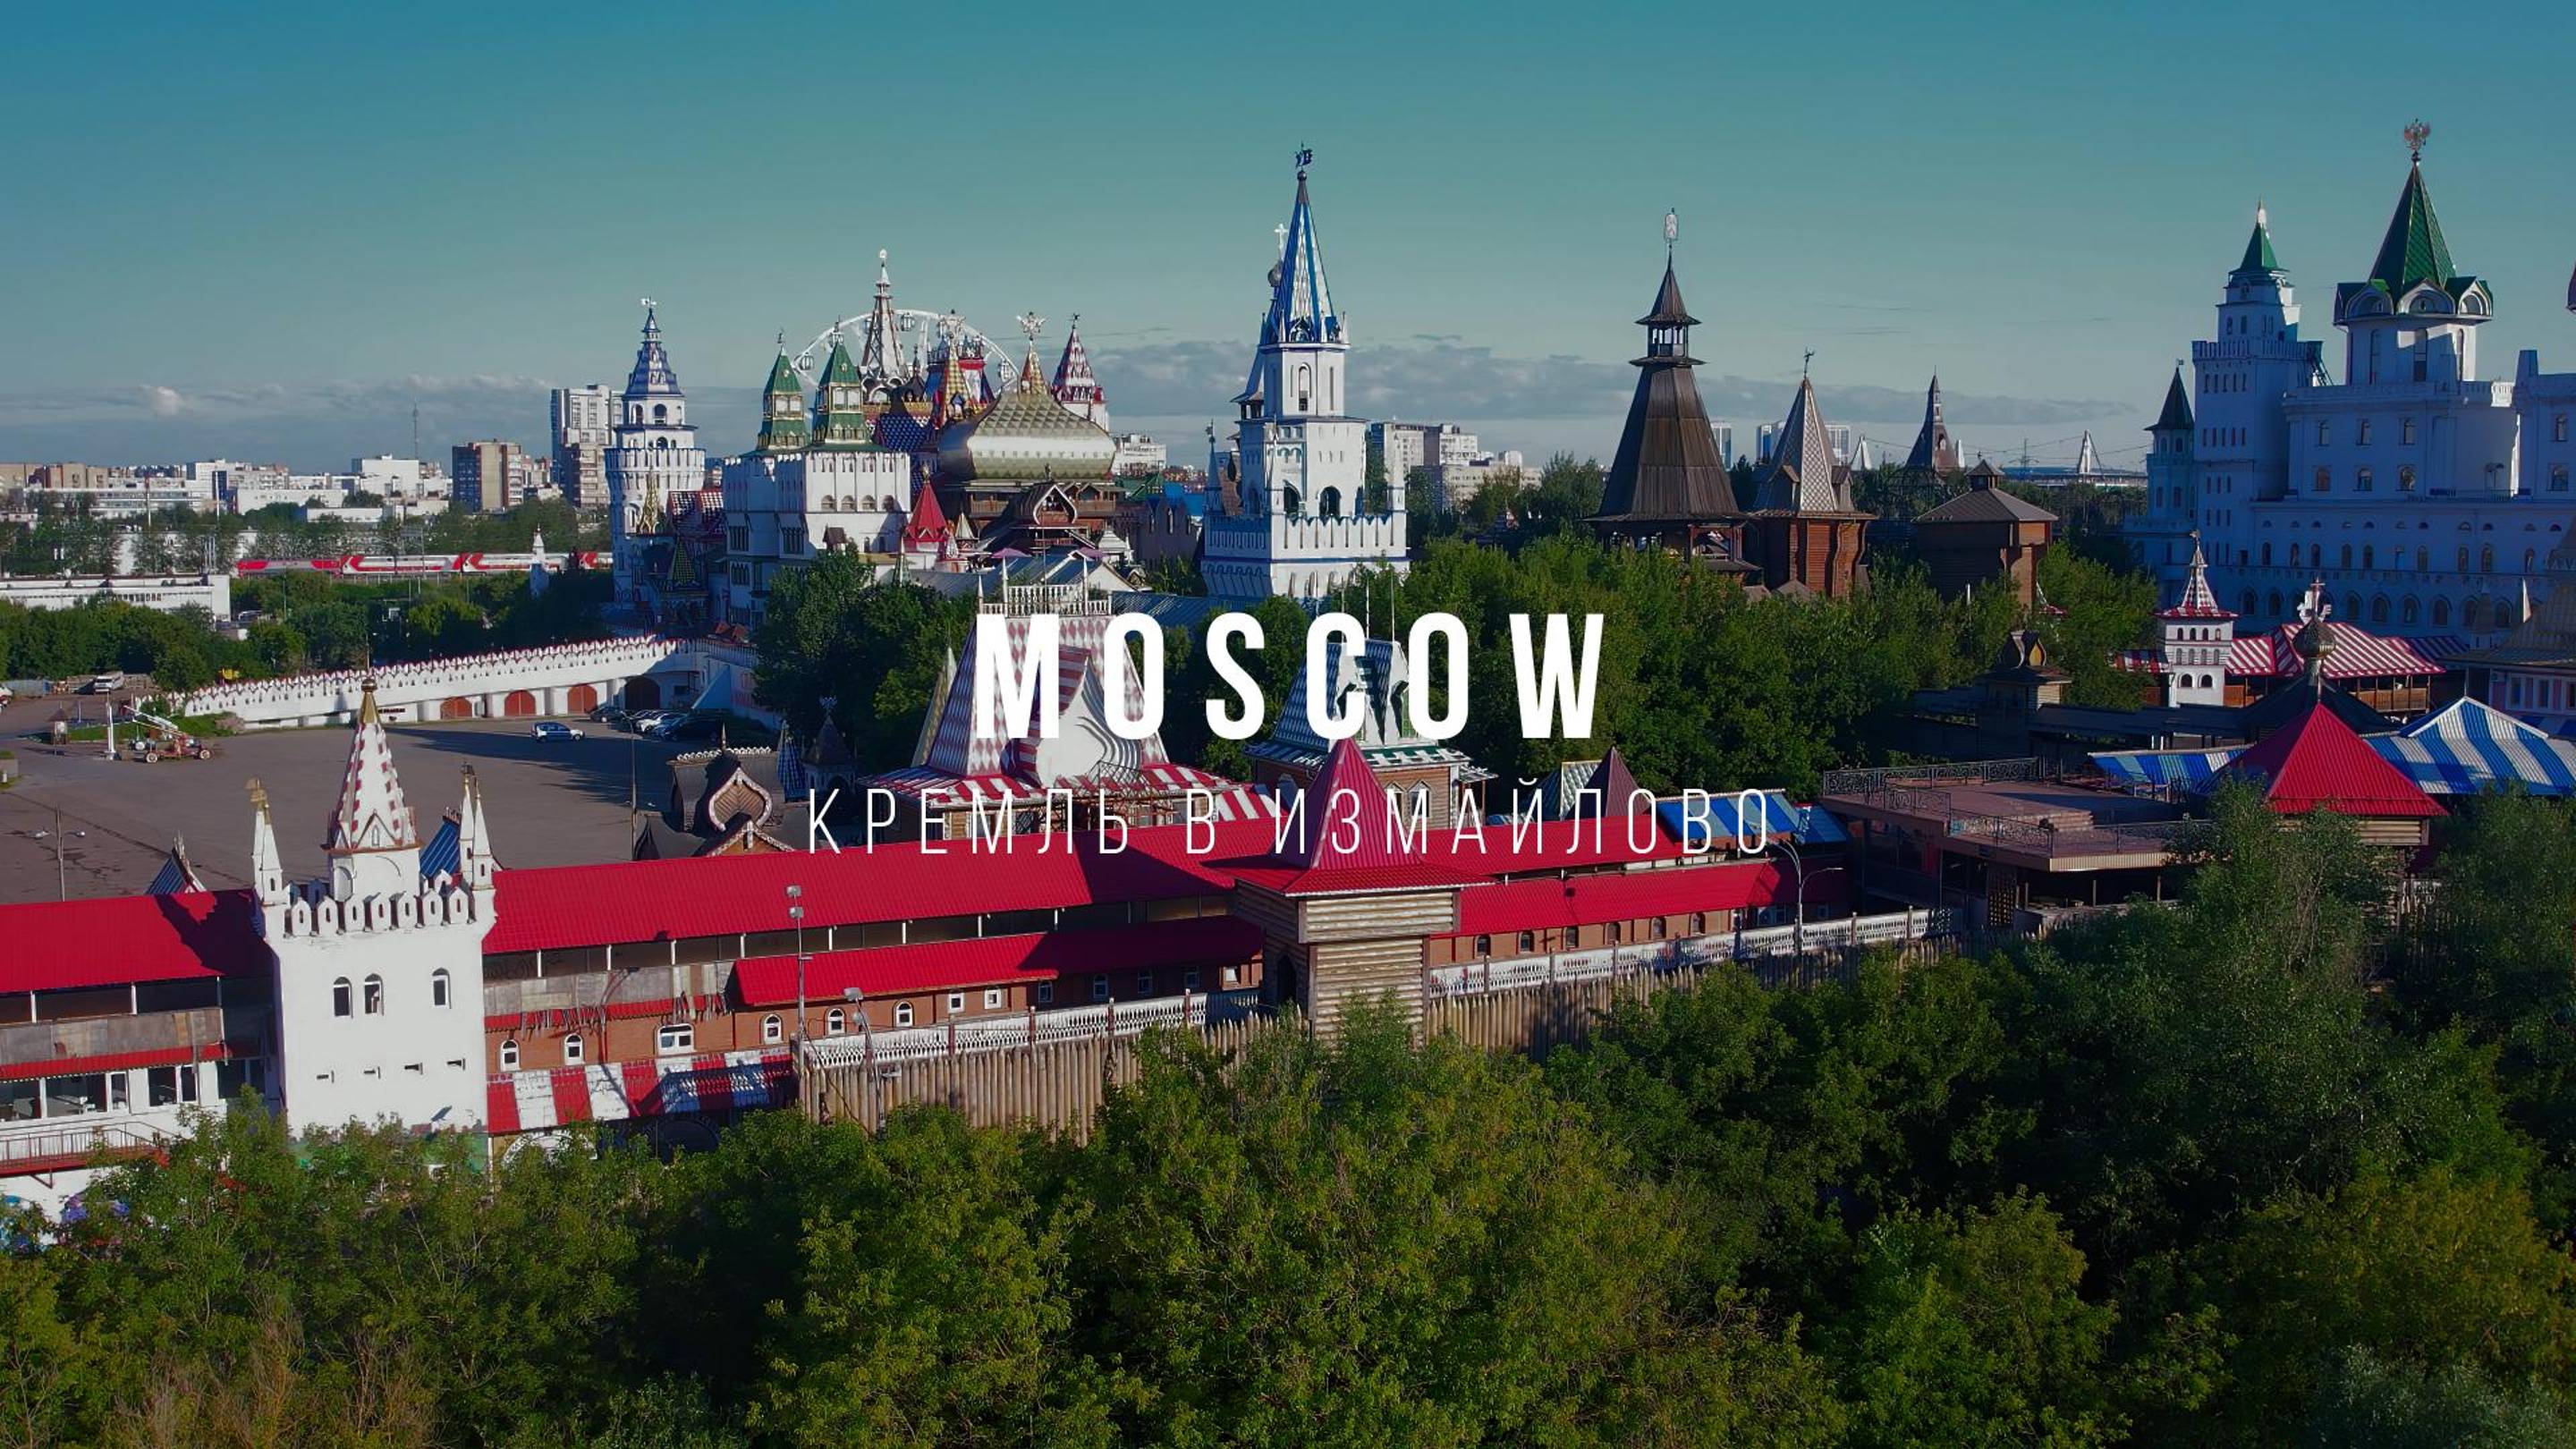 Moscow Kremlin in Izmailovo. Кремль в Измайлово